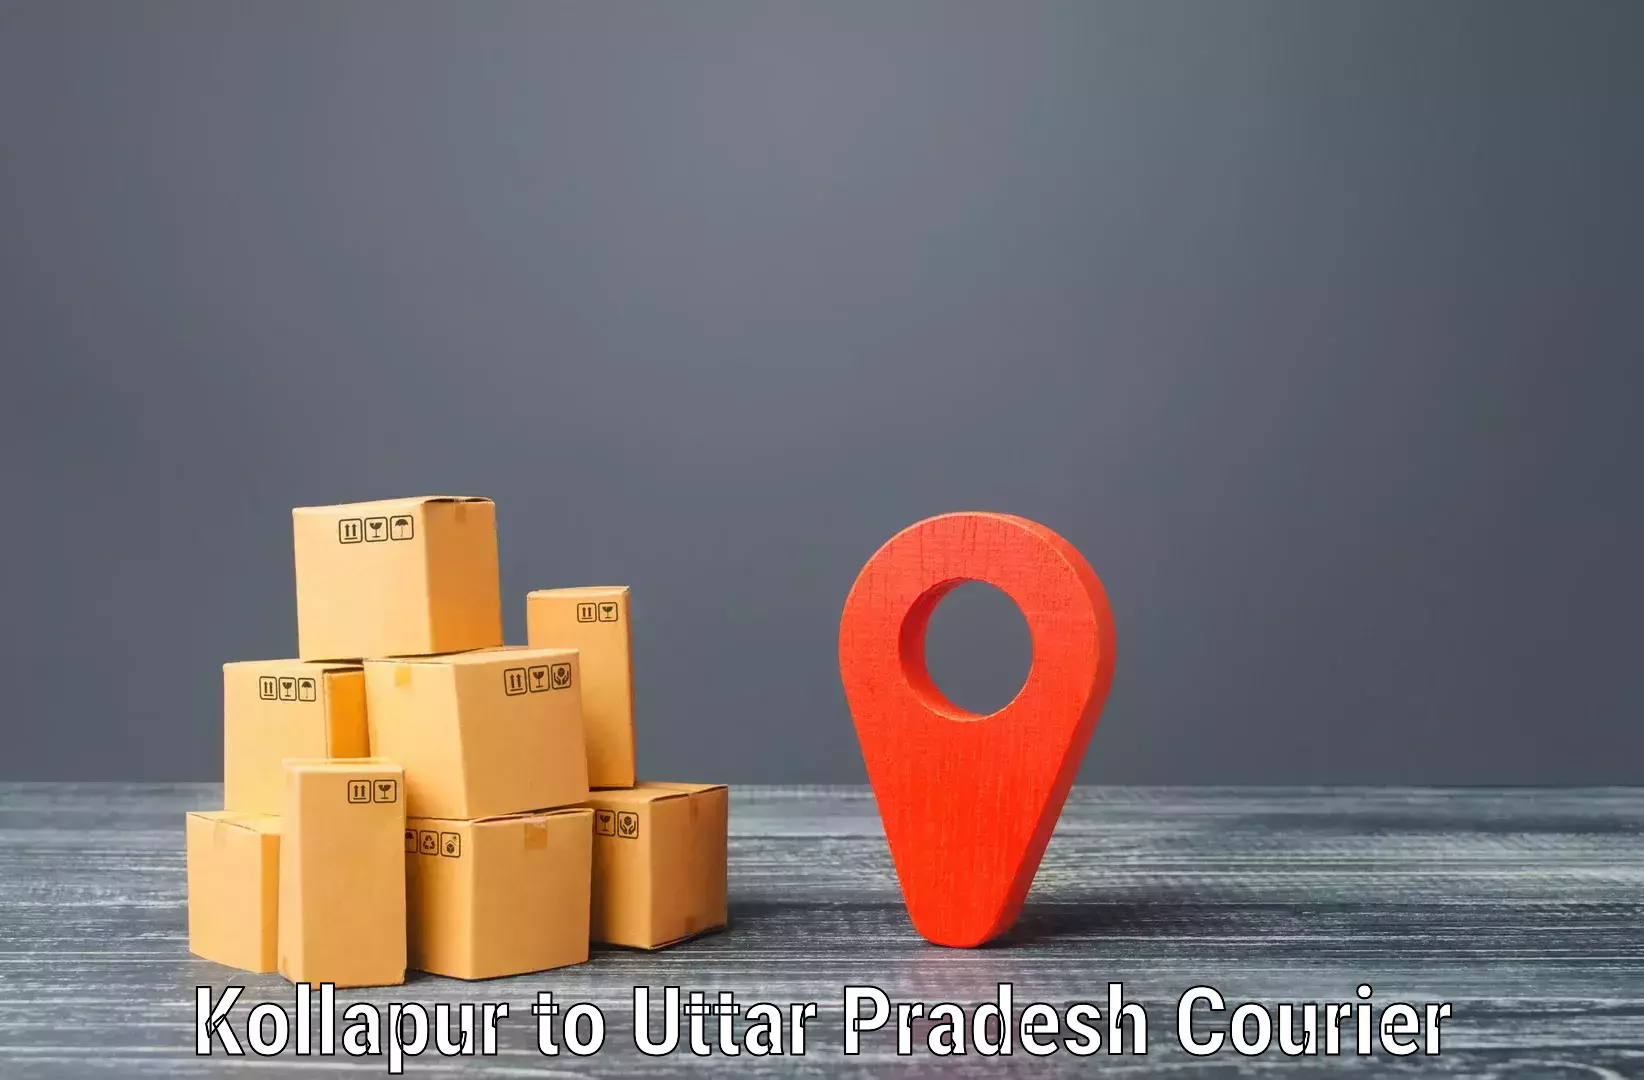 Logistics service provider Kollapur to Jagdishpur Amethi